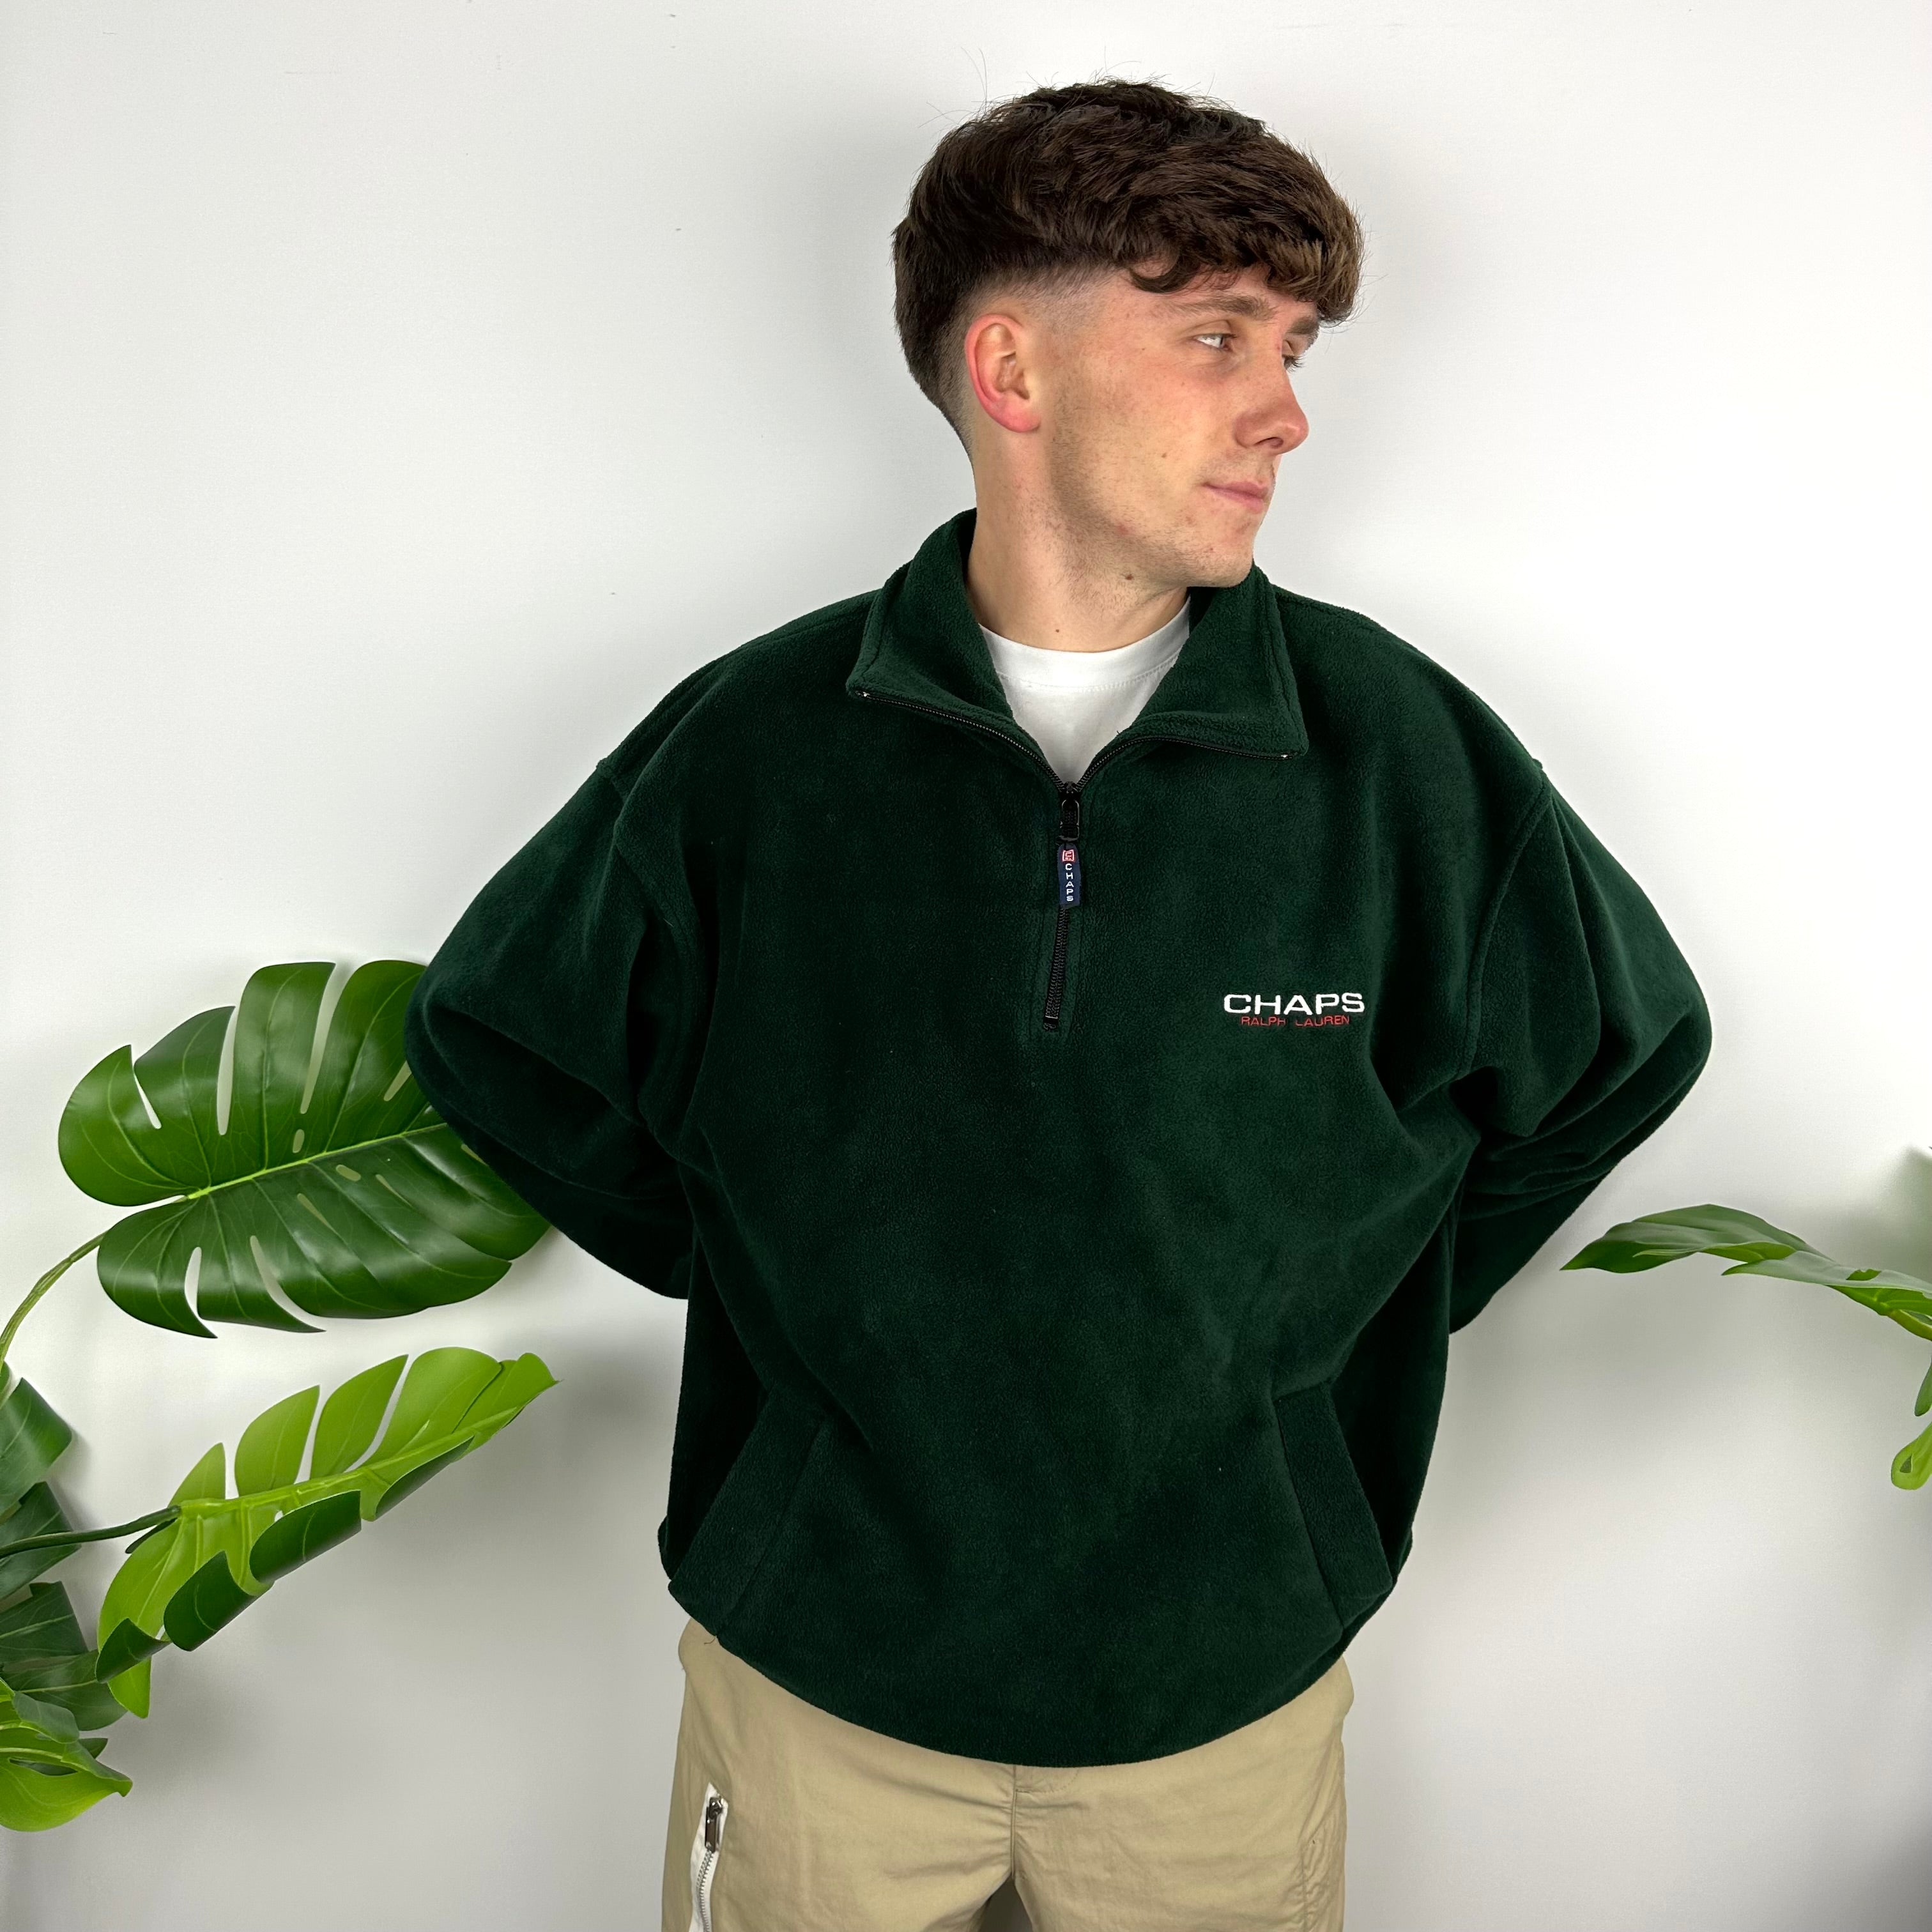 Chaps Ralph Lauren Green Embroidered Spell Out Teddy Bear Fleece Quarter Zip Sweatshirt (XL)